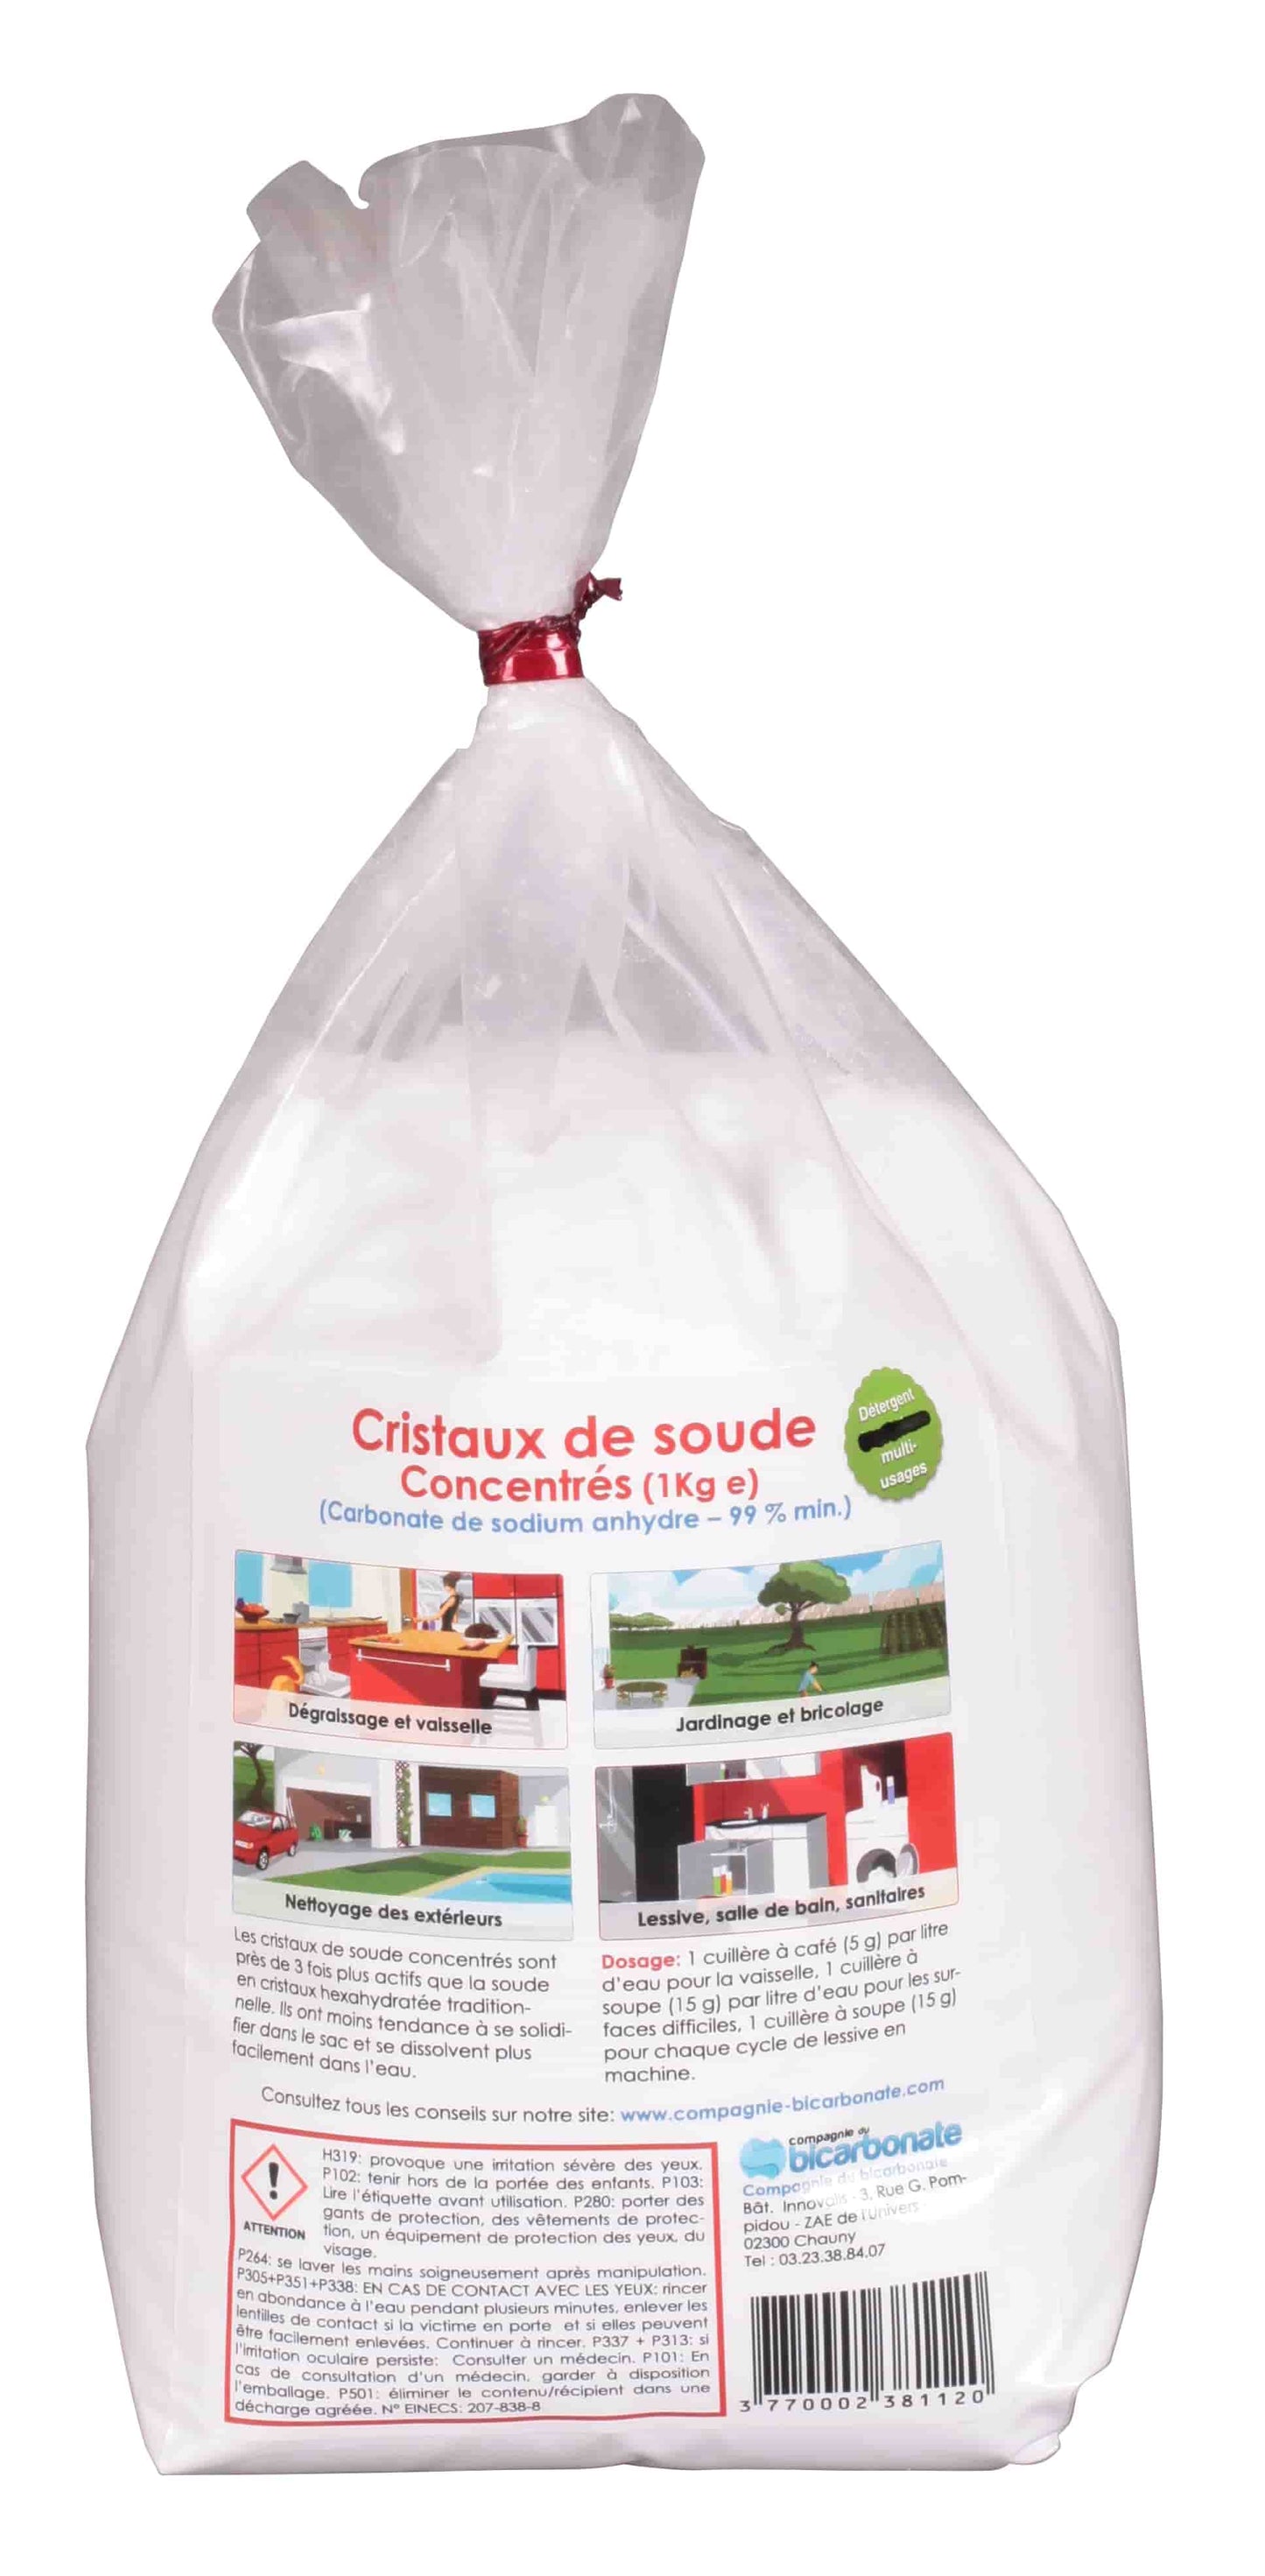 La Compagnie Du Bicarbonate -- Cristaux de soude concentrés (sac refermable) - 1 kg